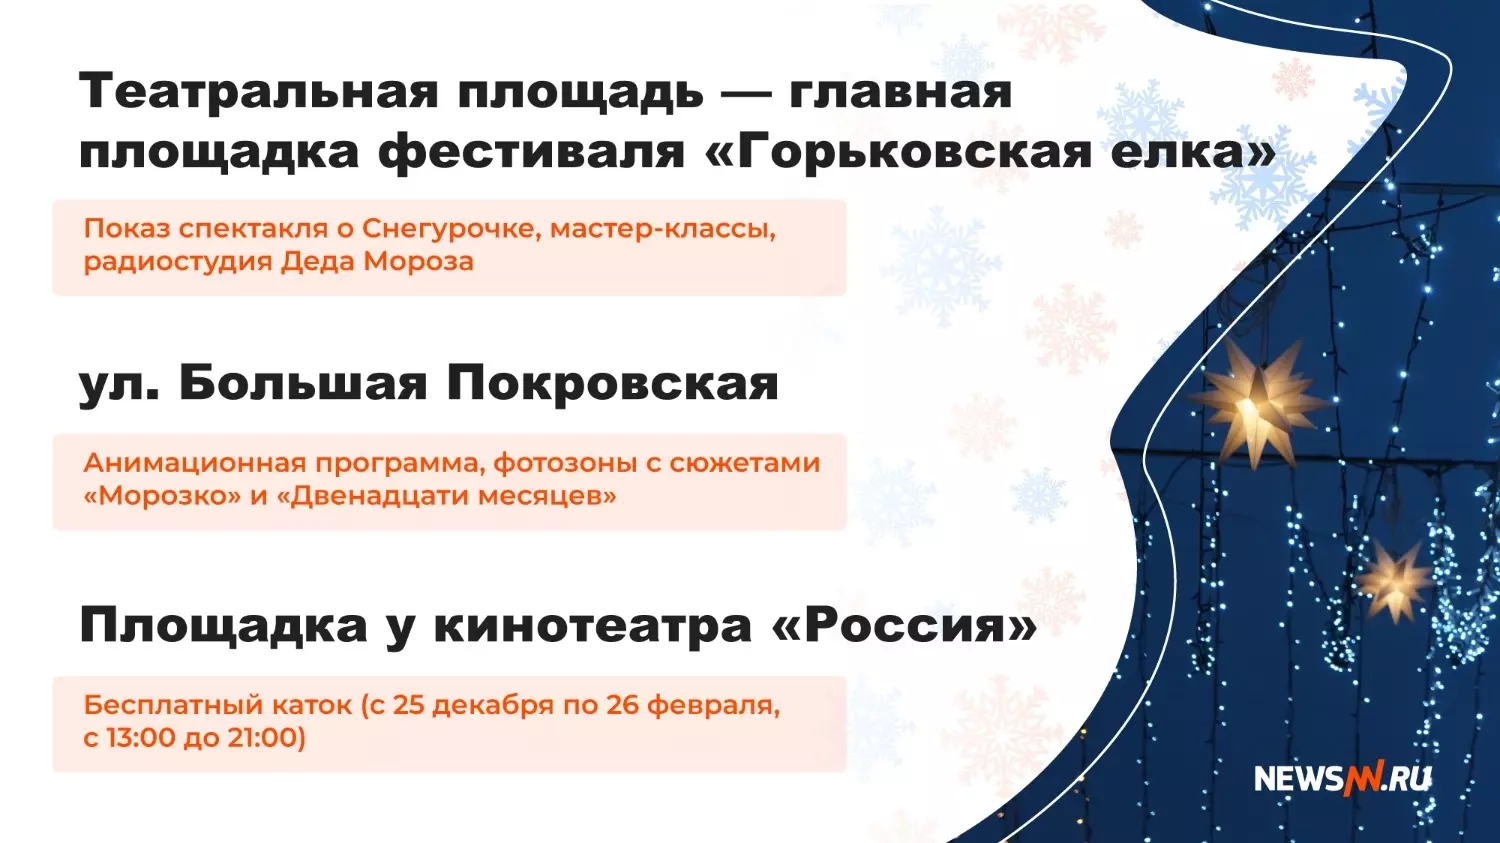 Новогодняя программа в Нижнем Новгороде